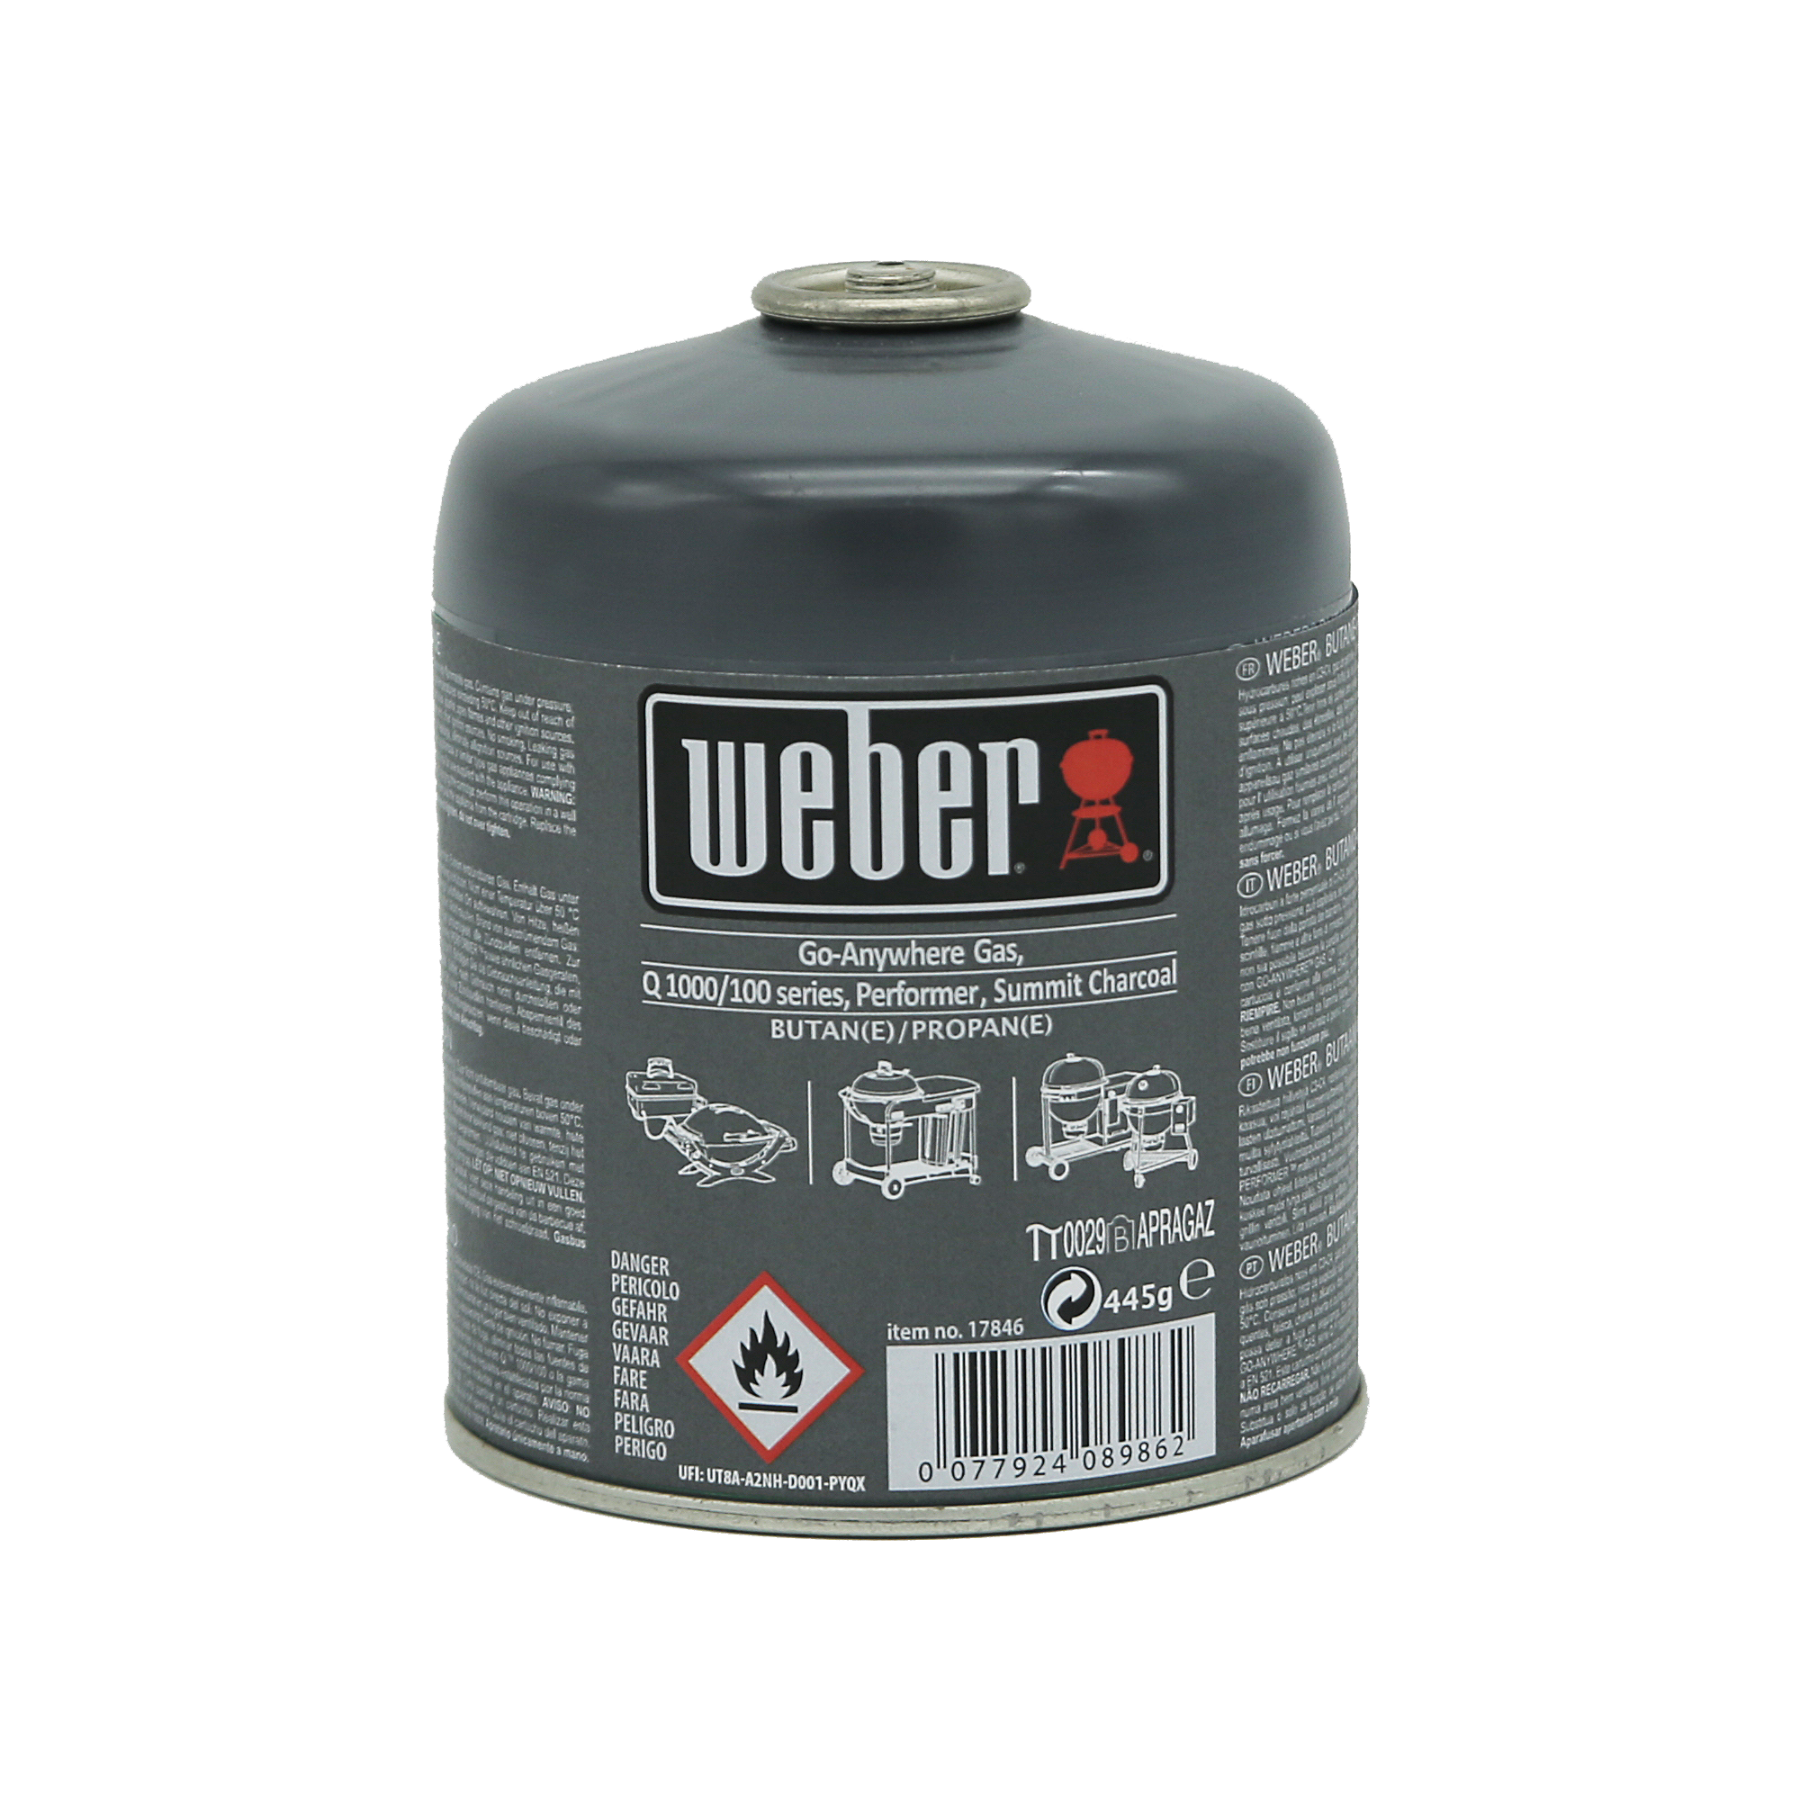 Weber Gas-Kartusche